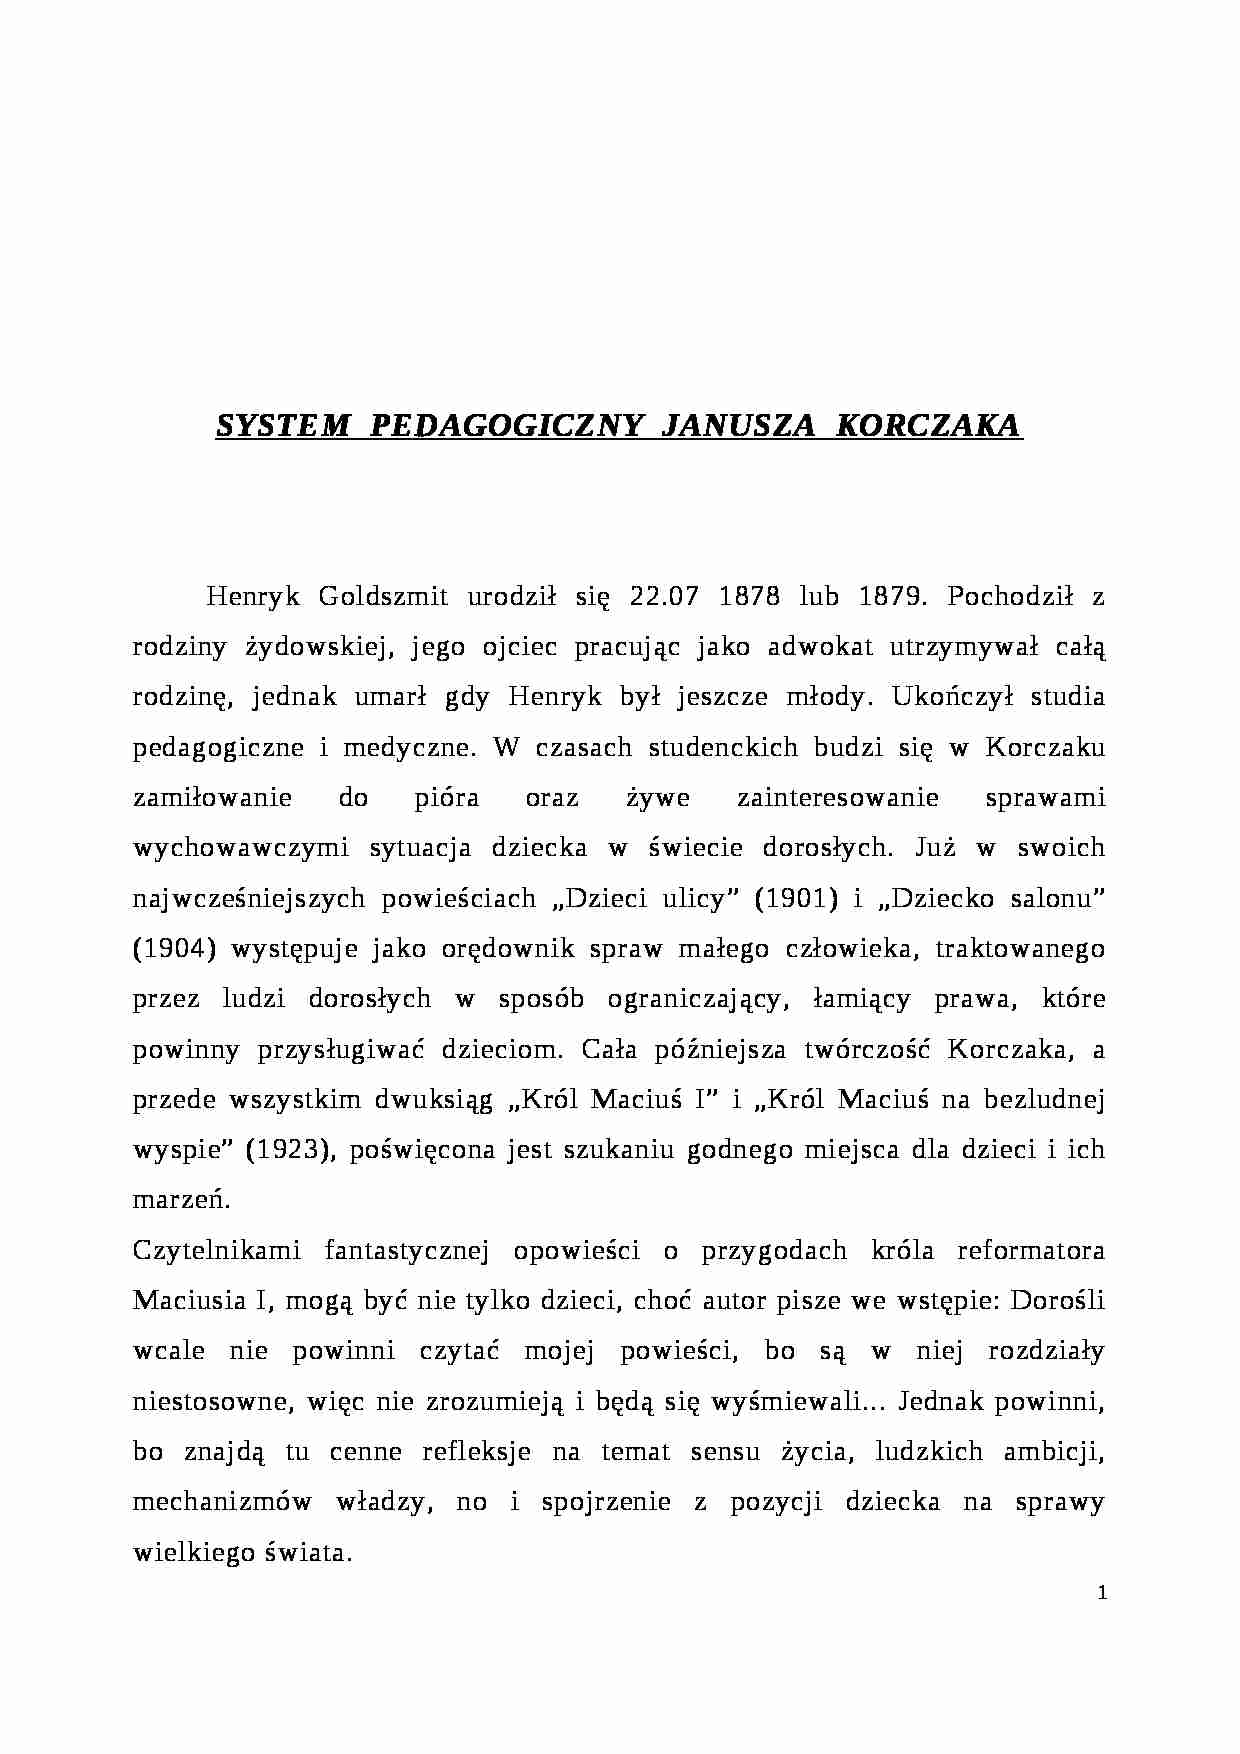 SYSTEM  PEDAGOGICZNY  JANUSZA  KORCZAKA- pedagogika - strona 1